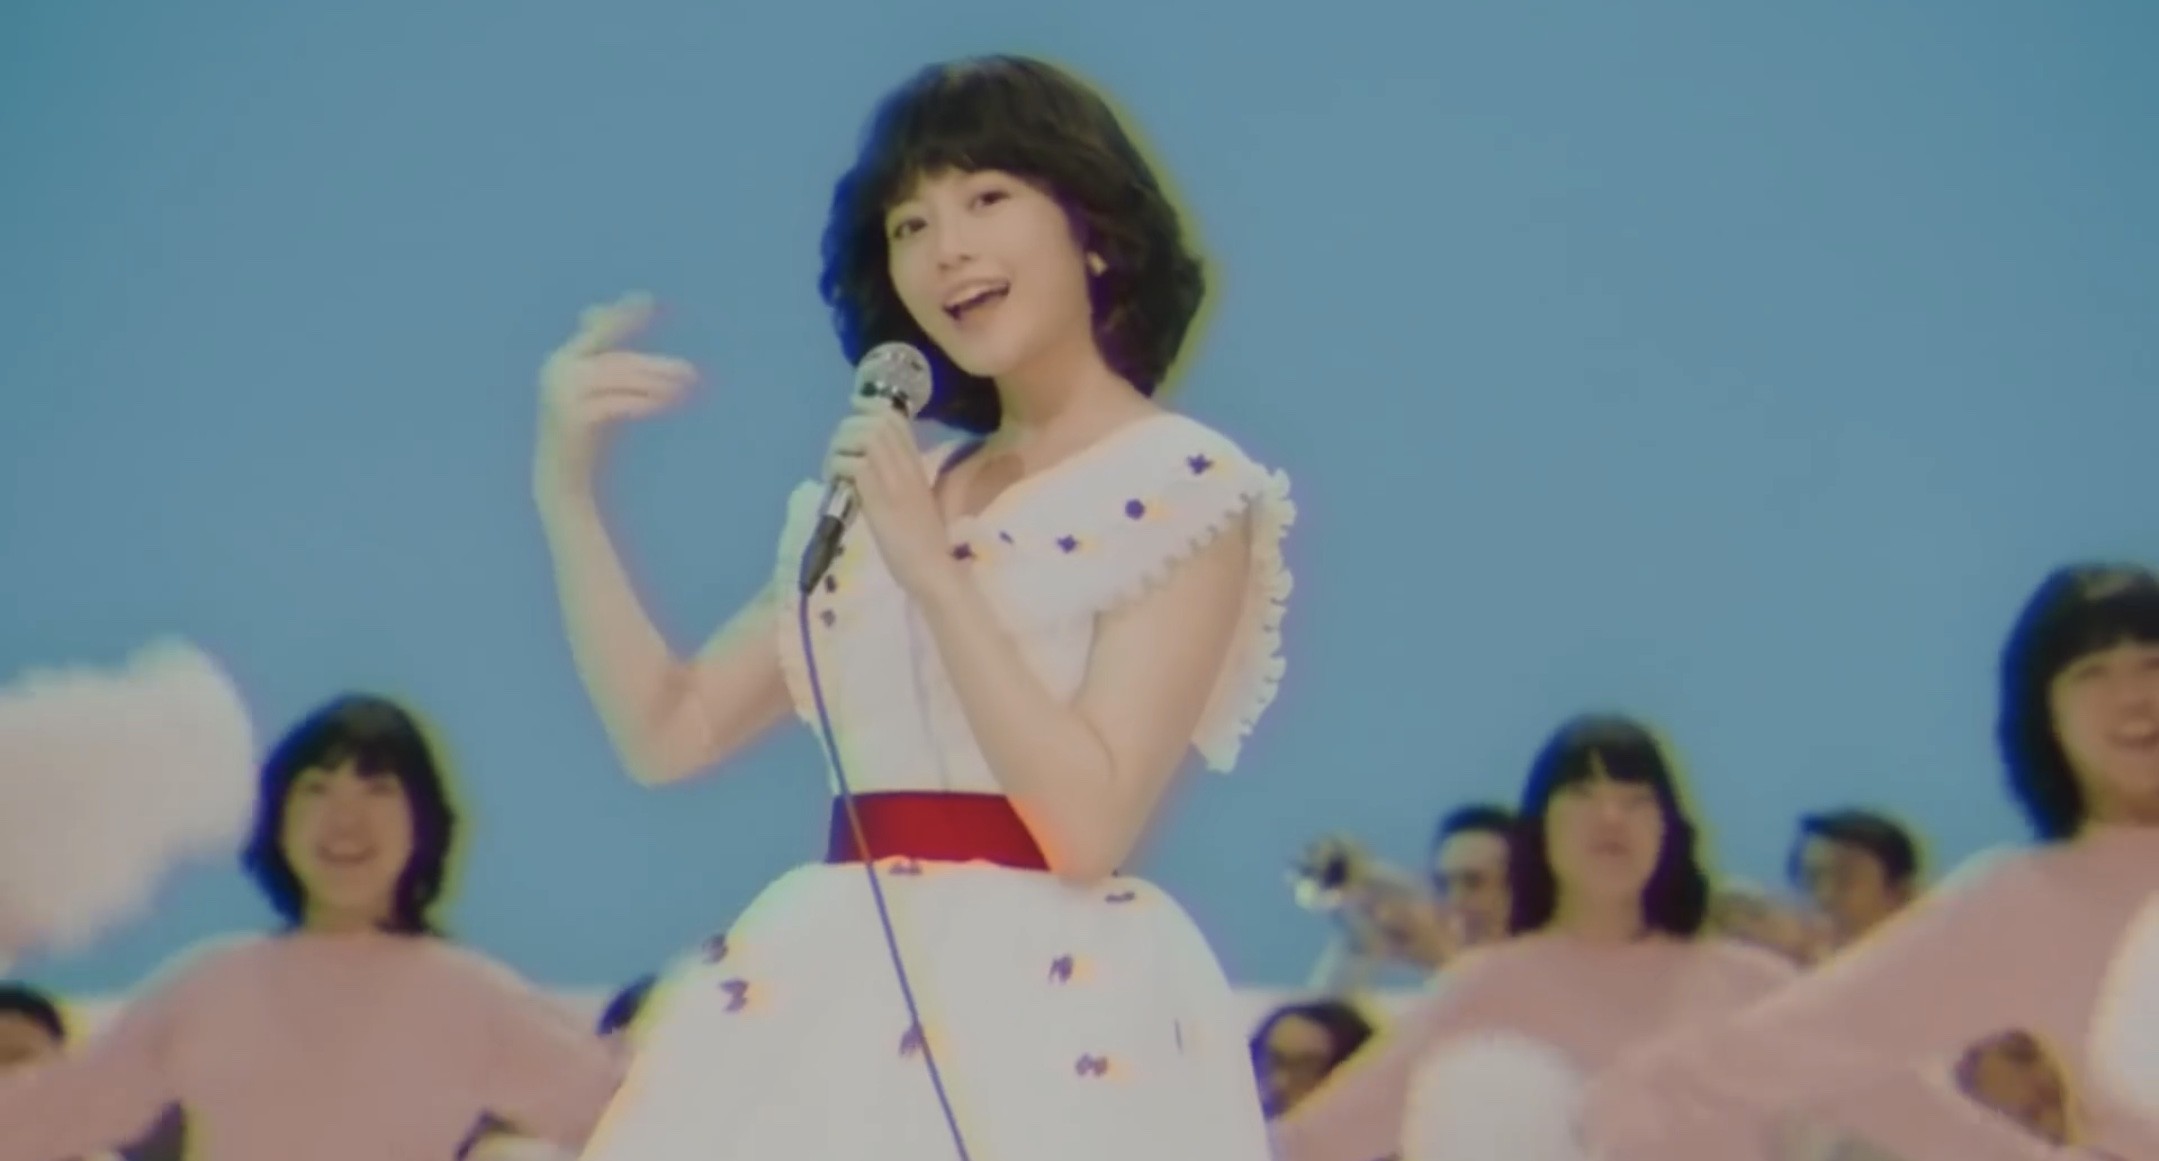 タマホームcmで80年代アイドルに扮しているのは誰 超絶可愛い今田美桜を見逃すな